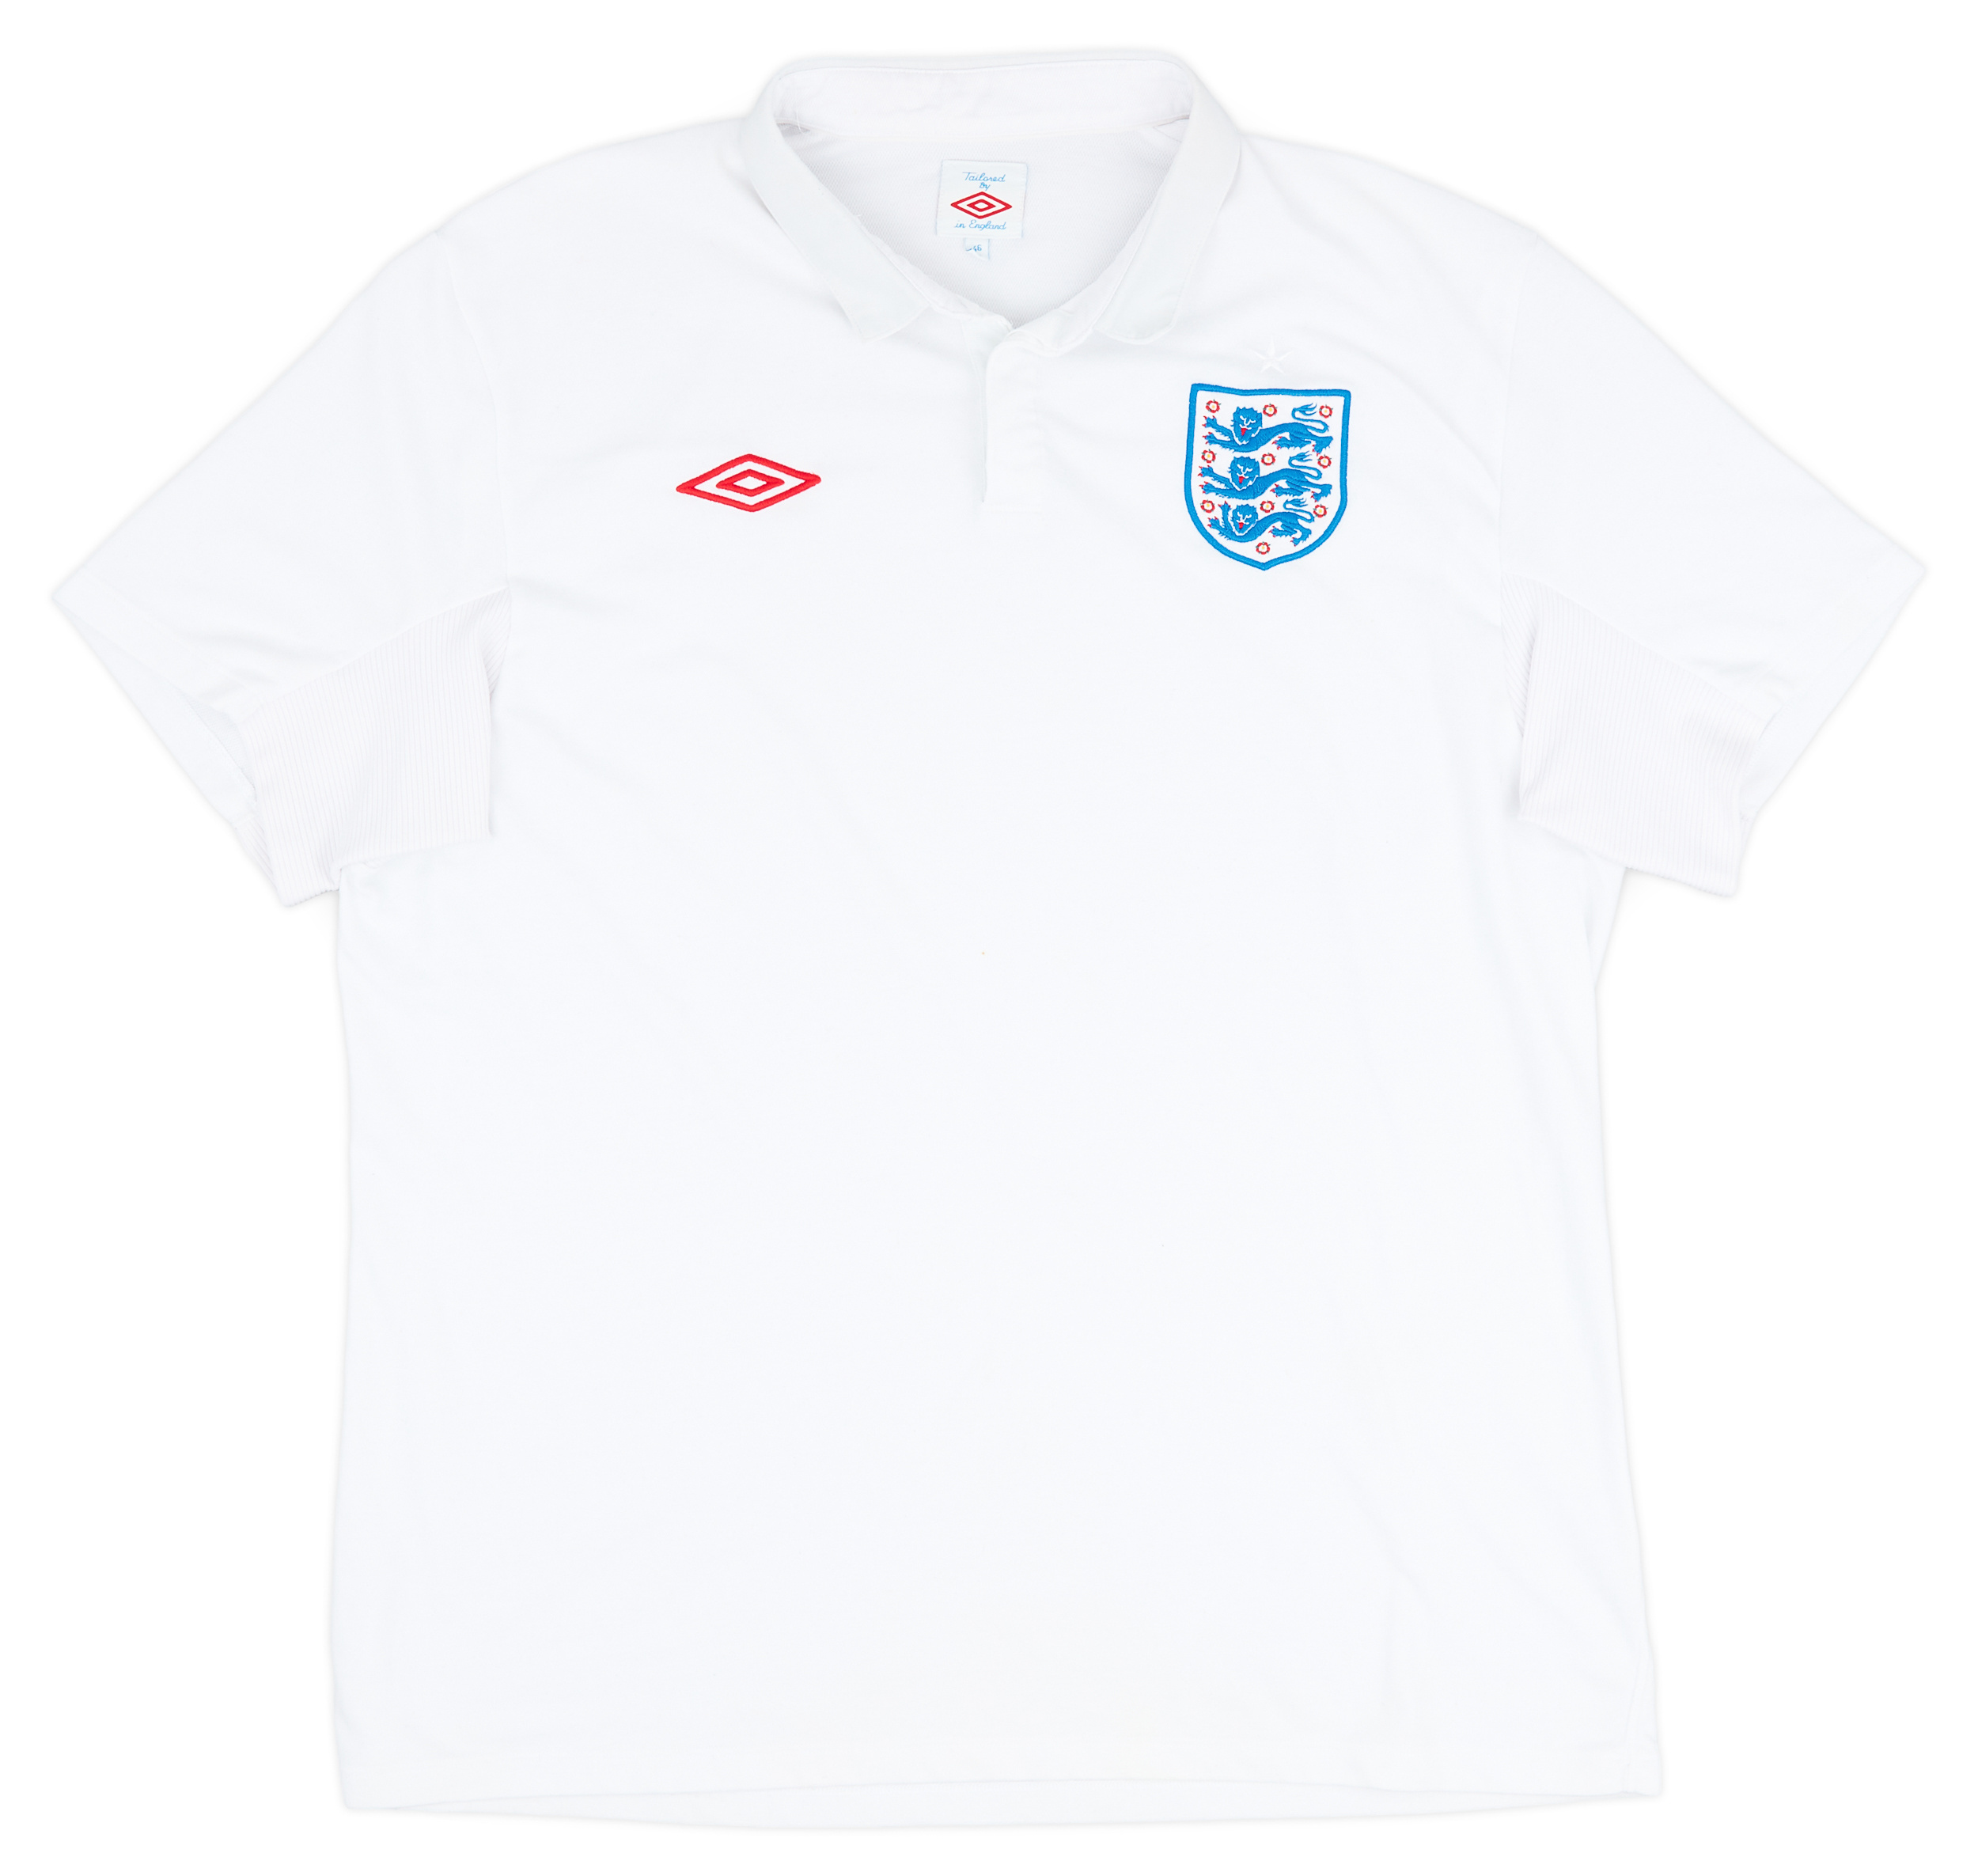 2009-10 England Home Shirt - 8/10 - ()